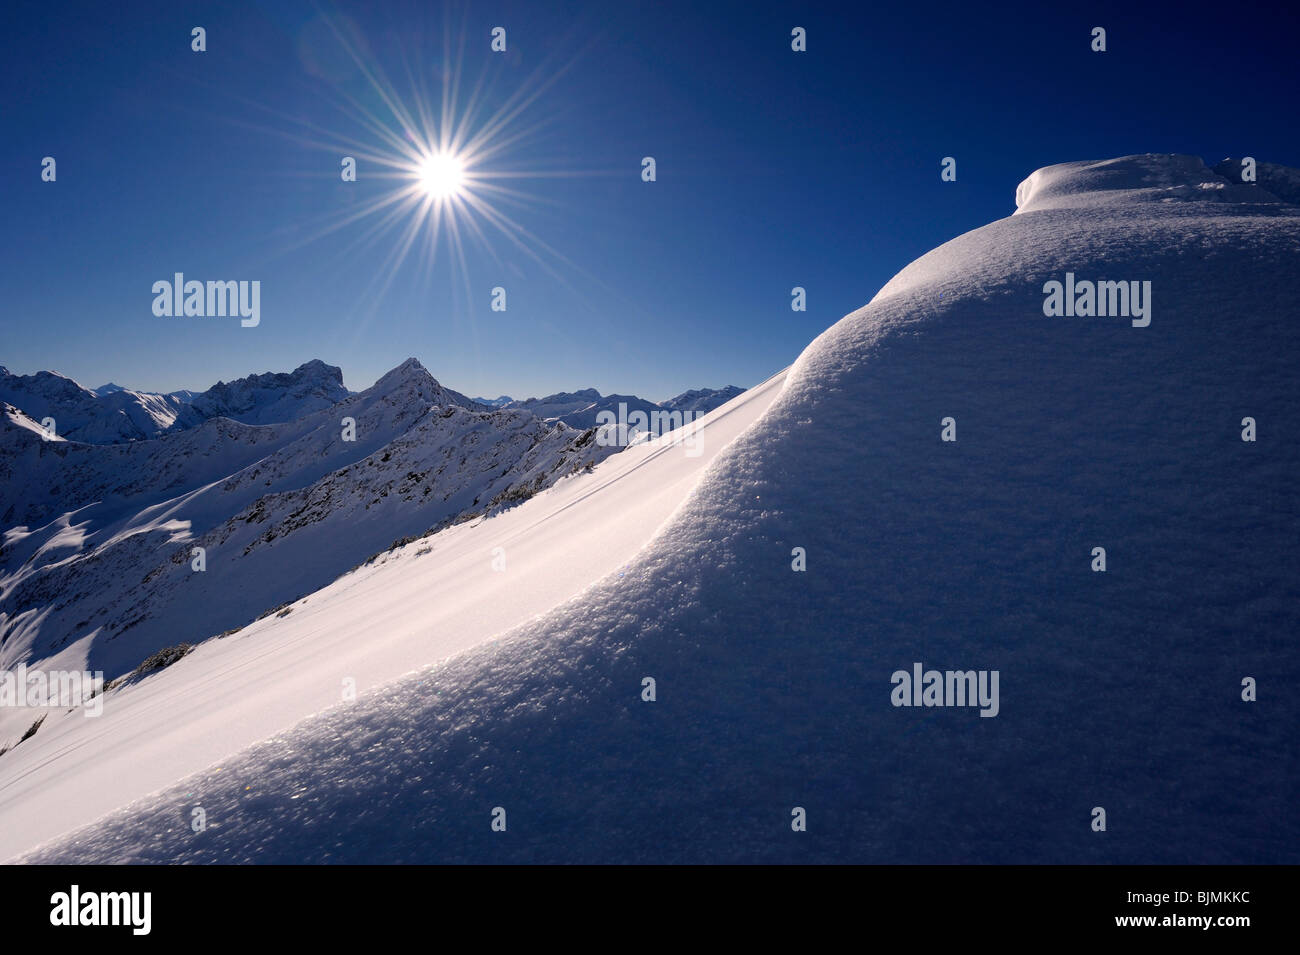 Schnee-Gesims mit einem sternförmigen Sonne vor einem Bergpanorama, Rietzler, Kleinwalsertal, Vorarlberg, Österreich, Europa Stockfoto